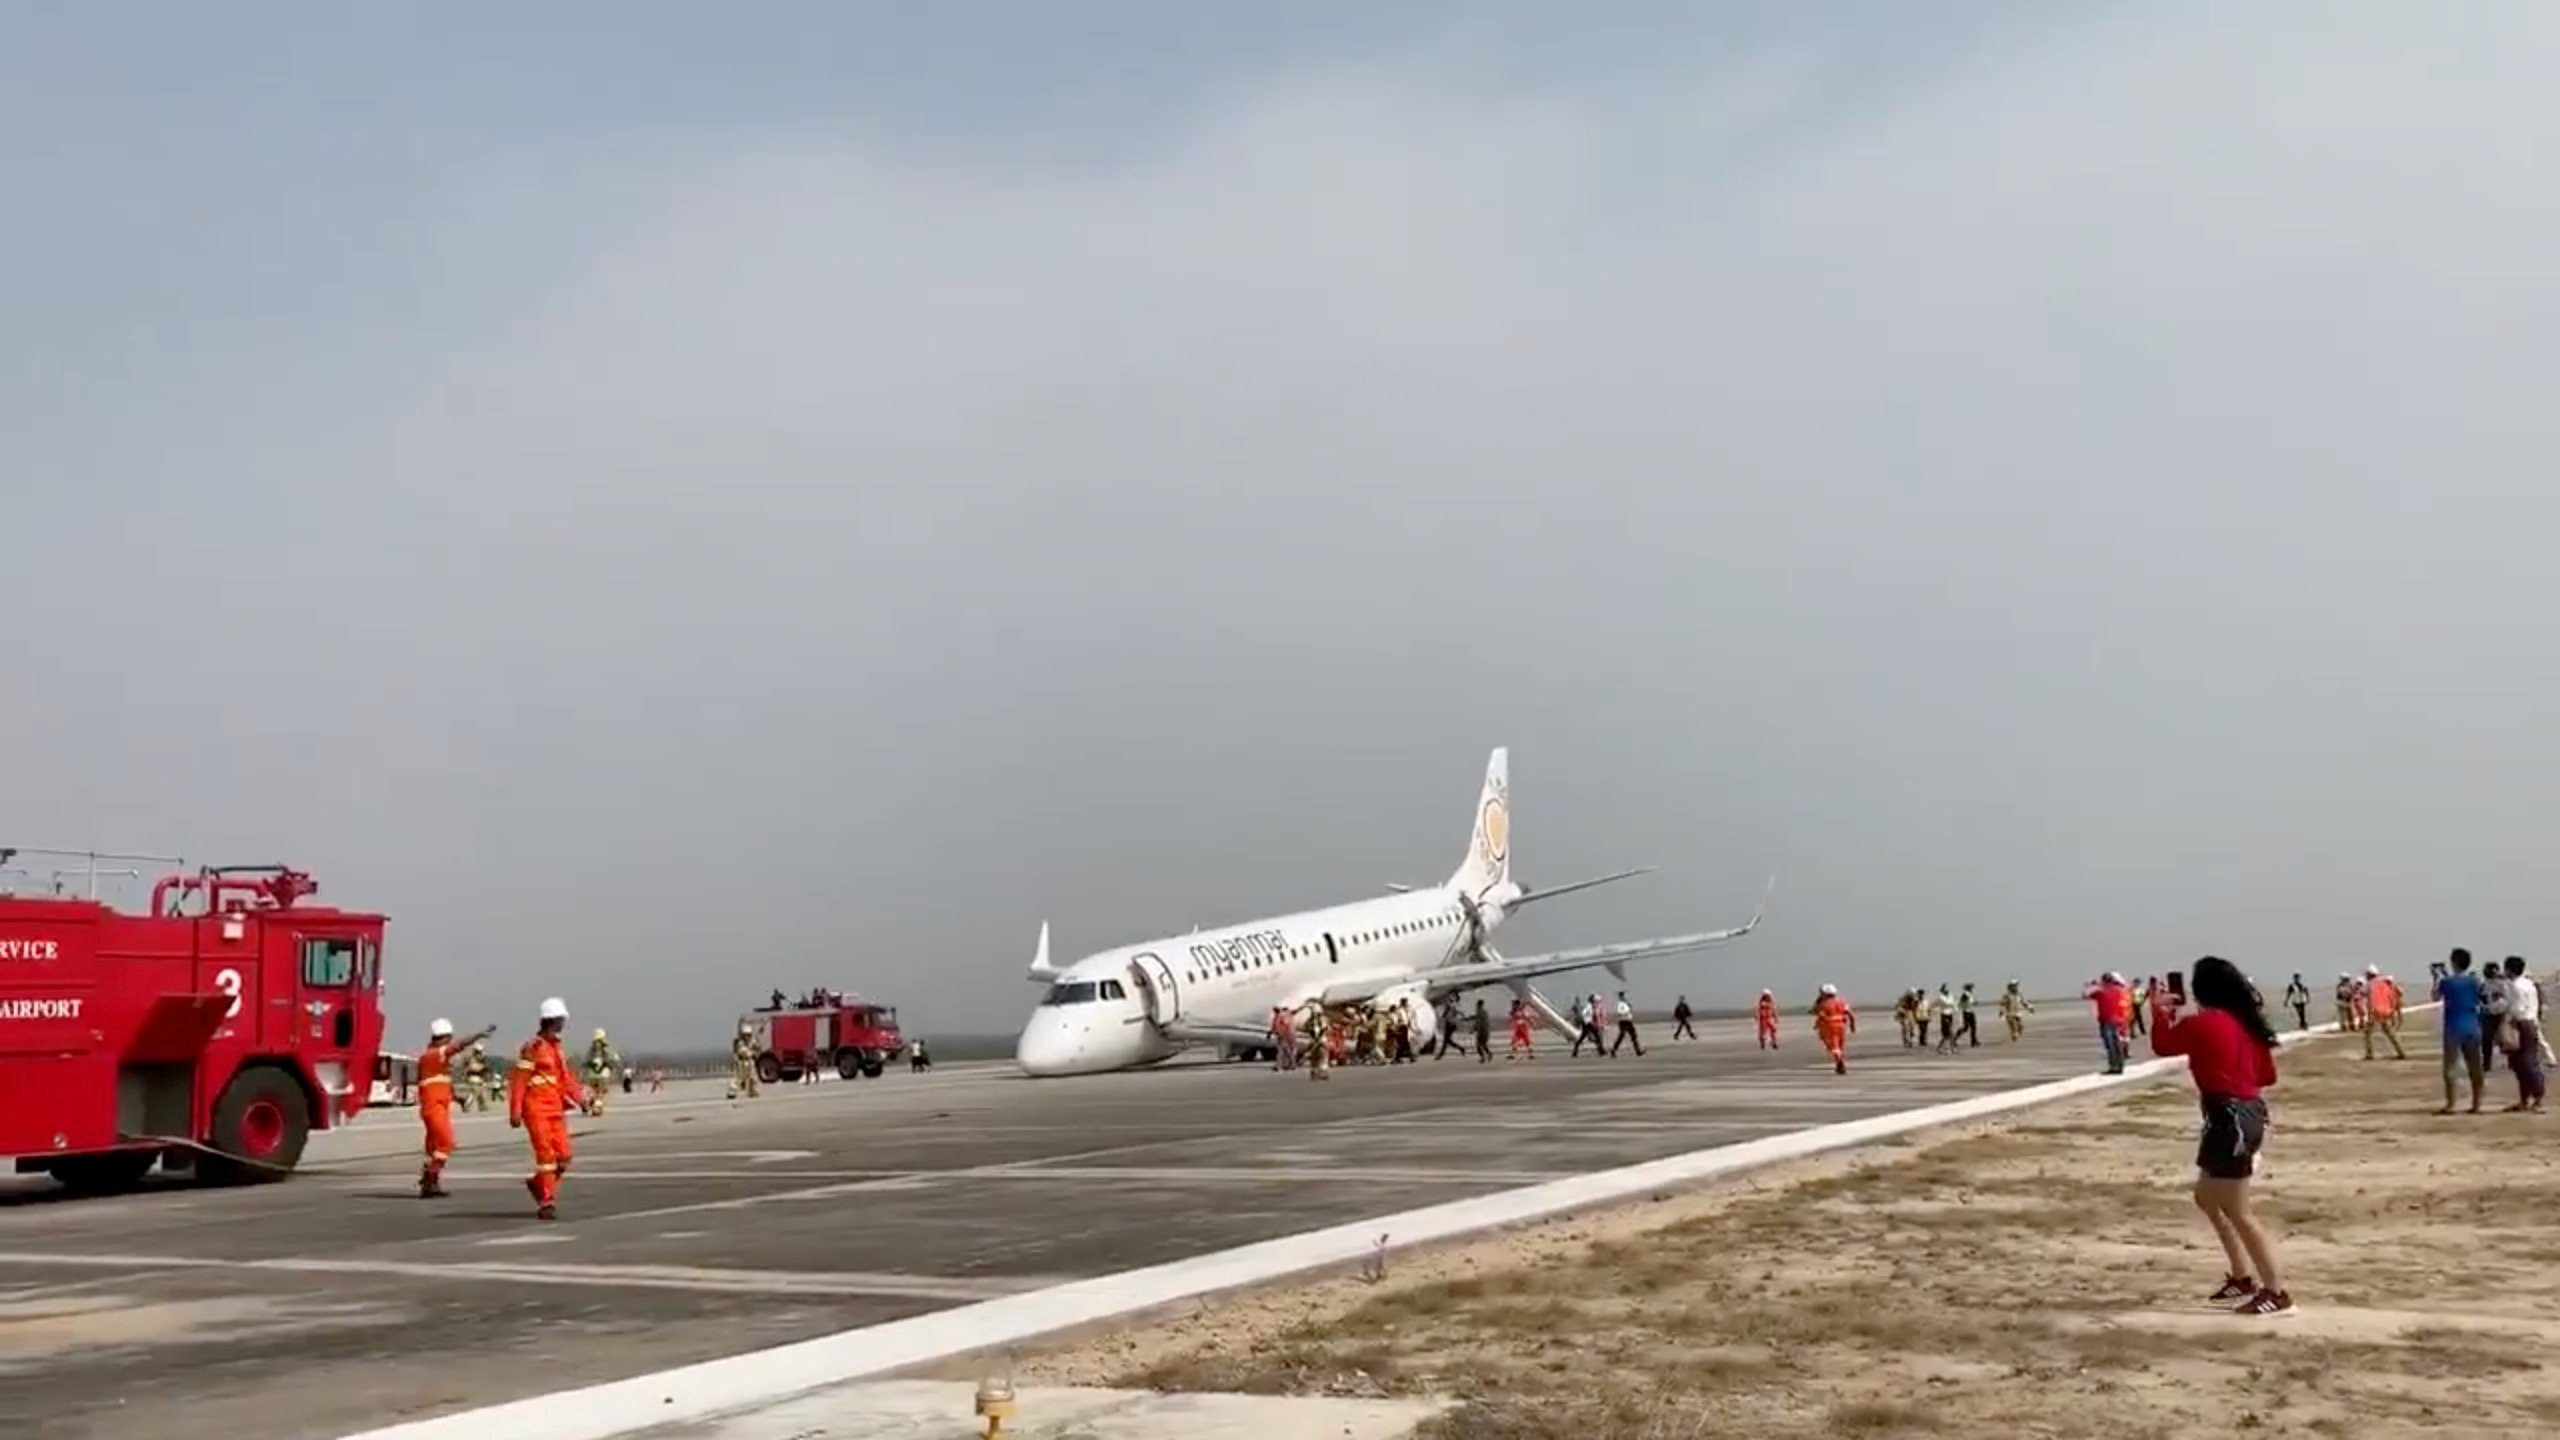 飞机上载有82名乘客，所幸没有造成人员伤亡。救援人员已经紧急处理现场。-路透社-